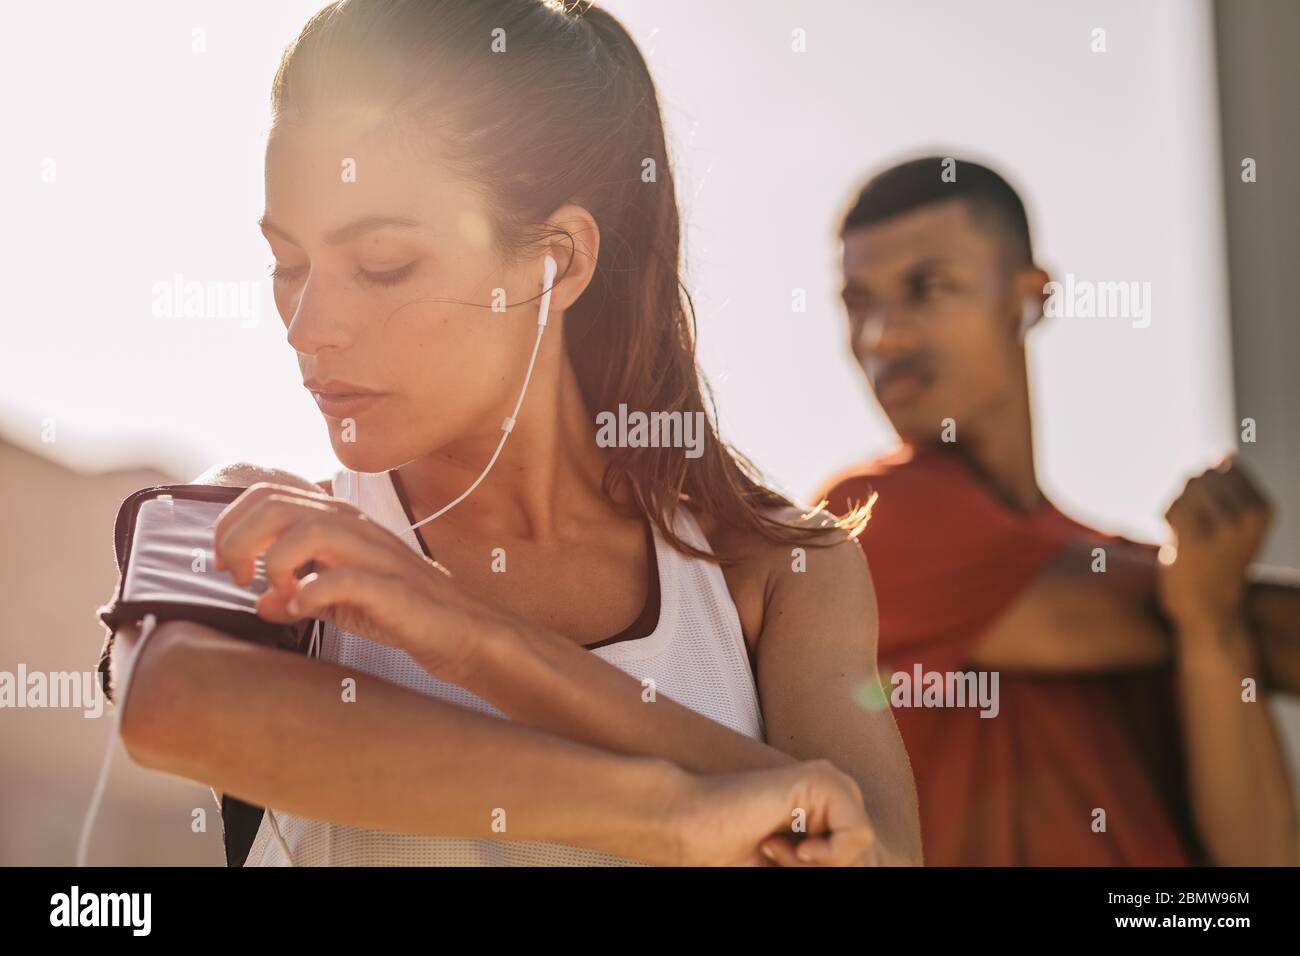 Primo piano di una donna che ascolta musica con gli auricolari dal suo smartphone mentre si esercita in città con un uomo in background. Donna che usa uno smartp Foto Stock